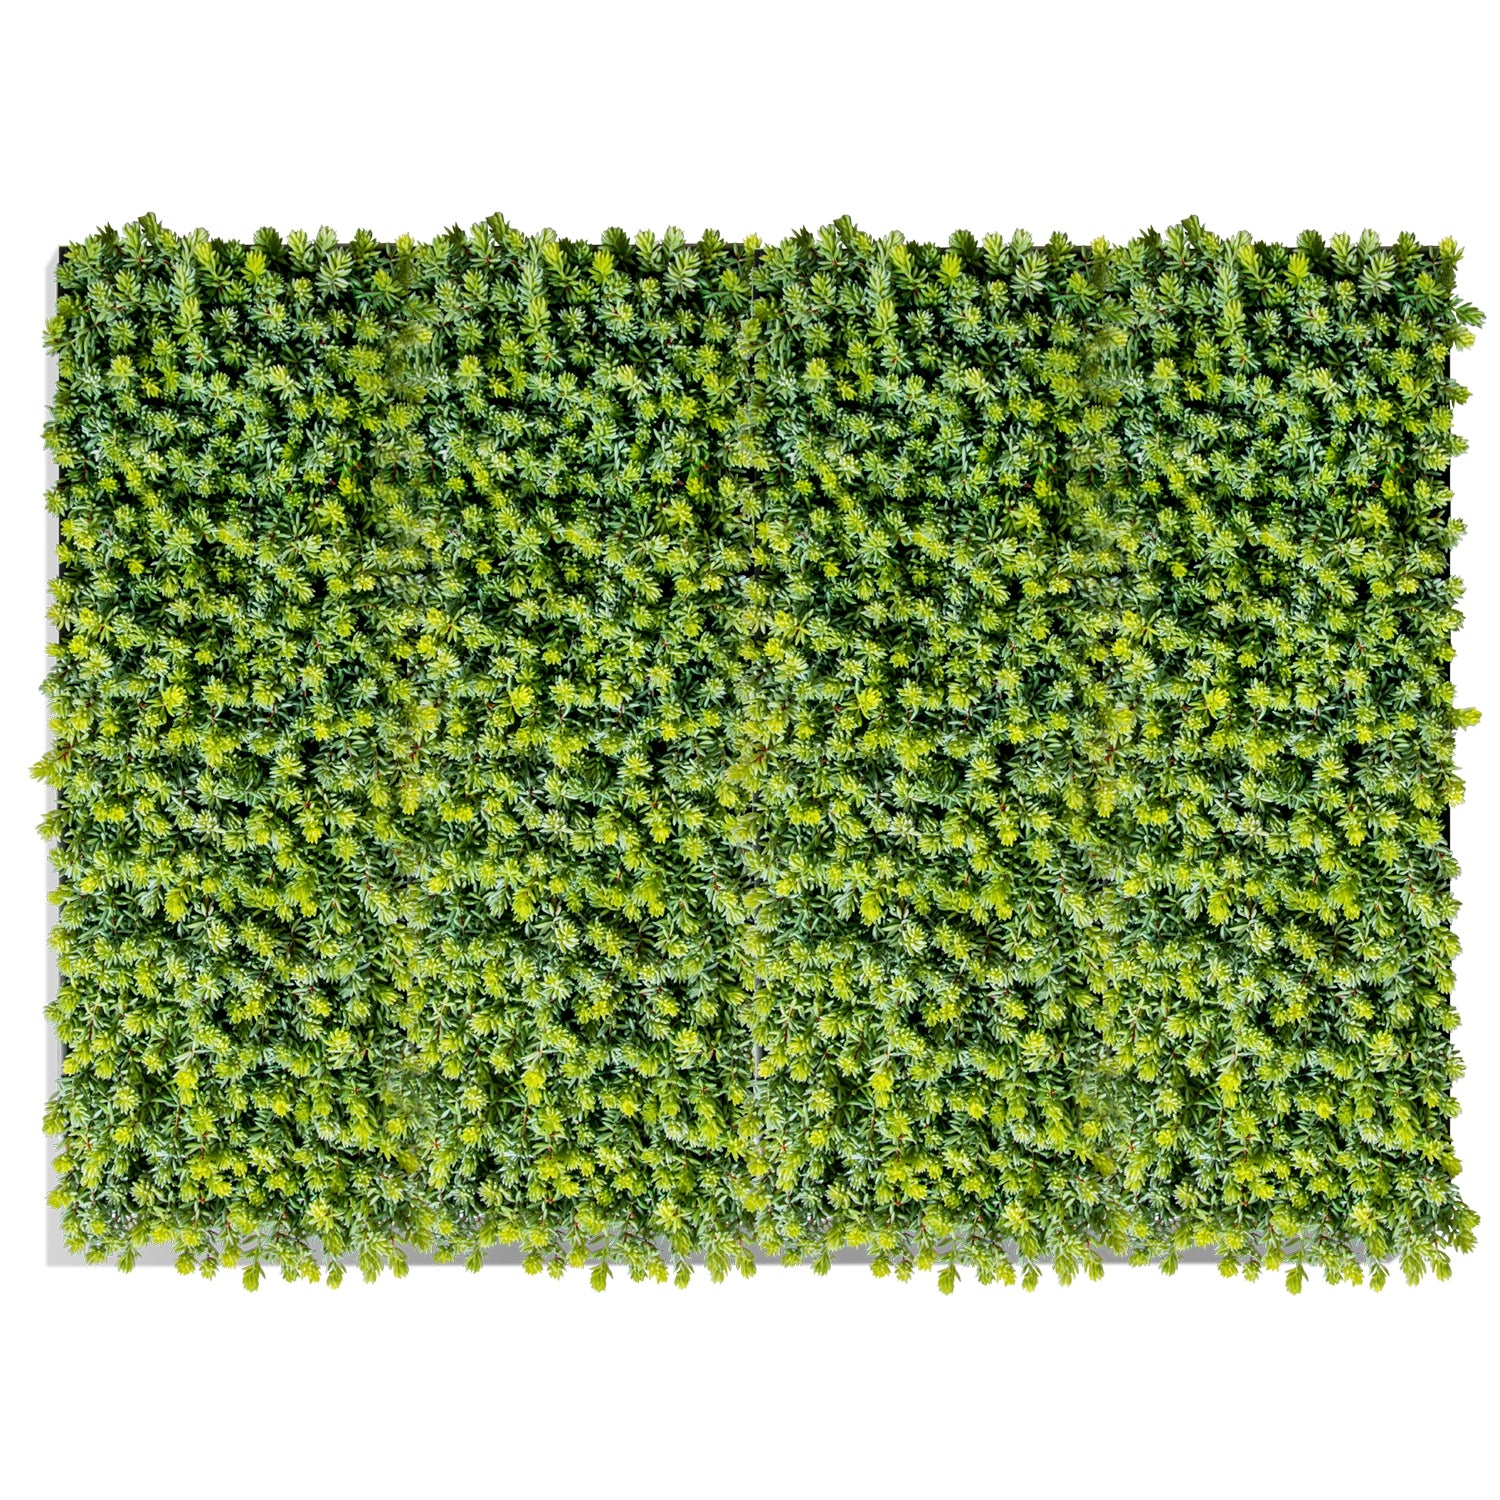 Green Wall, Sedum Album Green